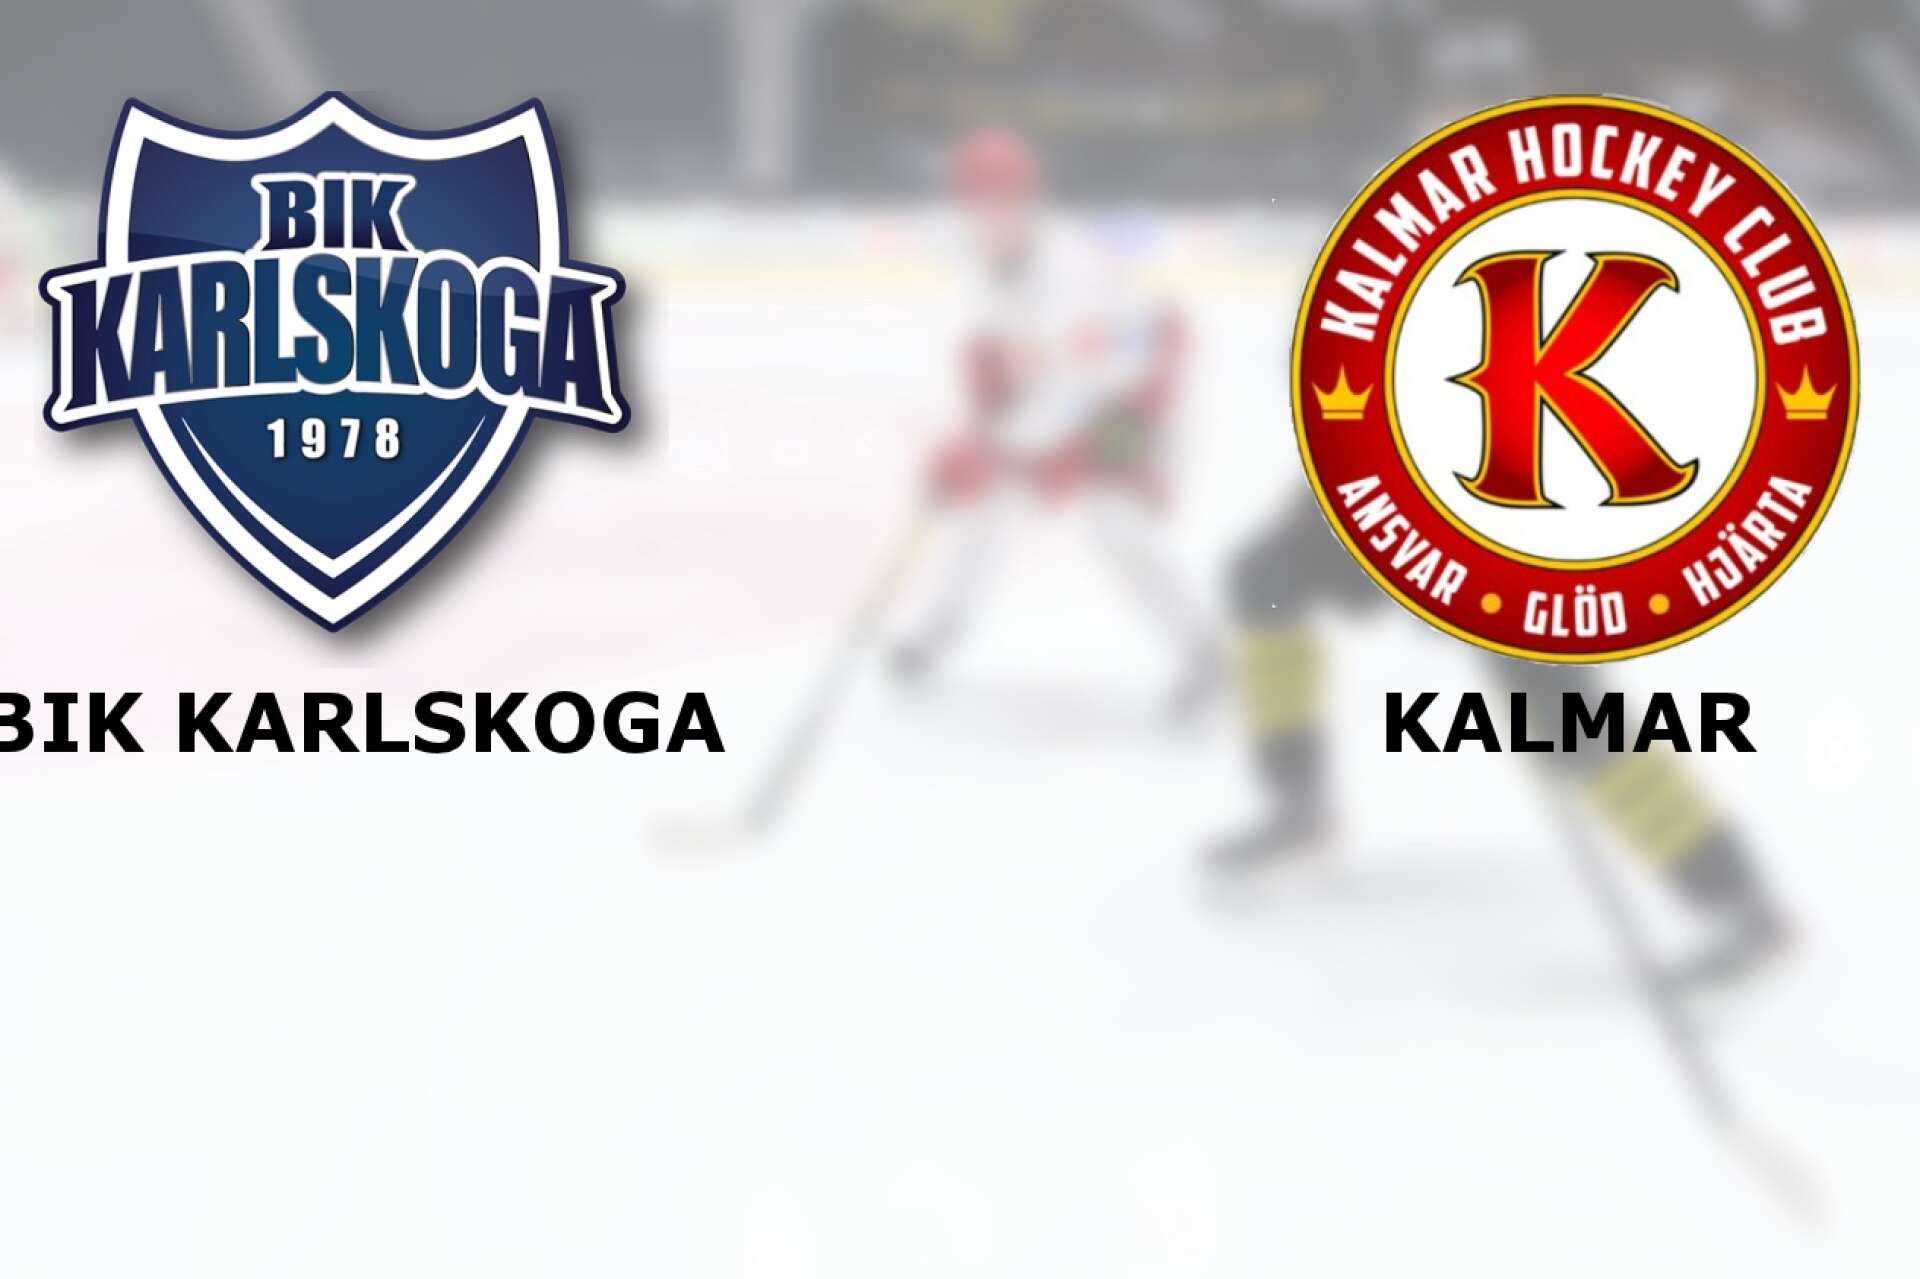 BIK Karlskoga A-lag förlorade mot Kalmar HC